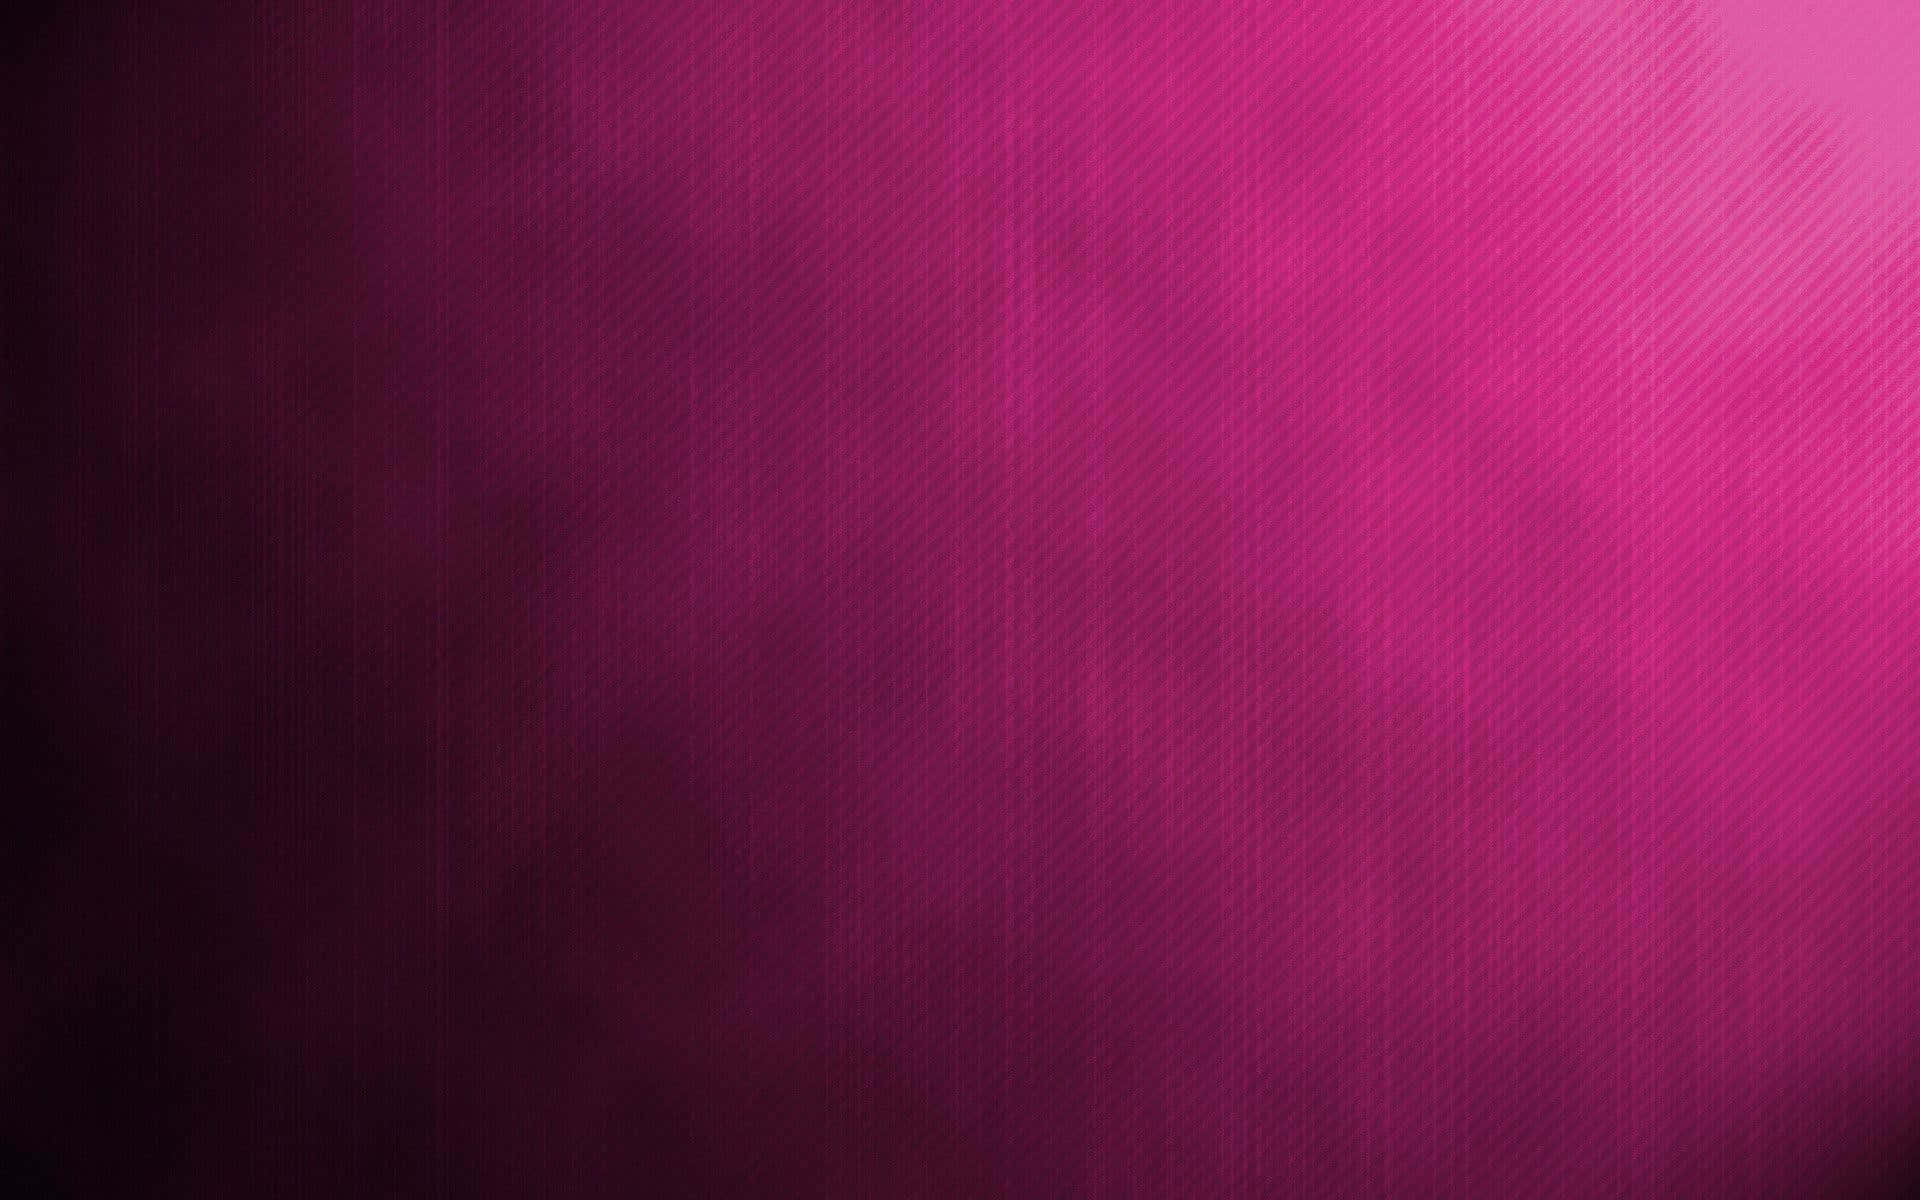 Umborrão Abstrato De Rosa Escuro. Papel de Parede